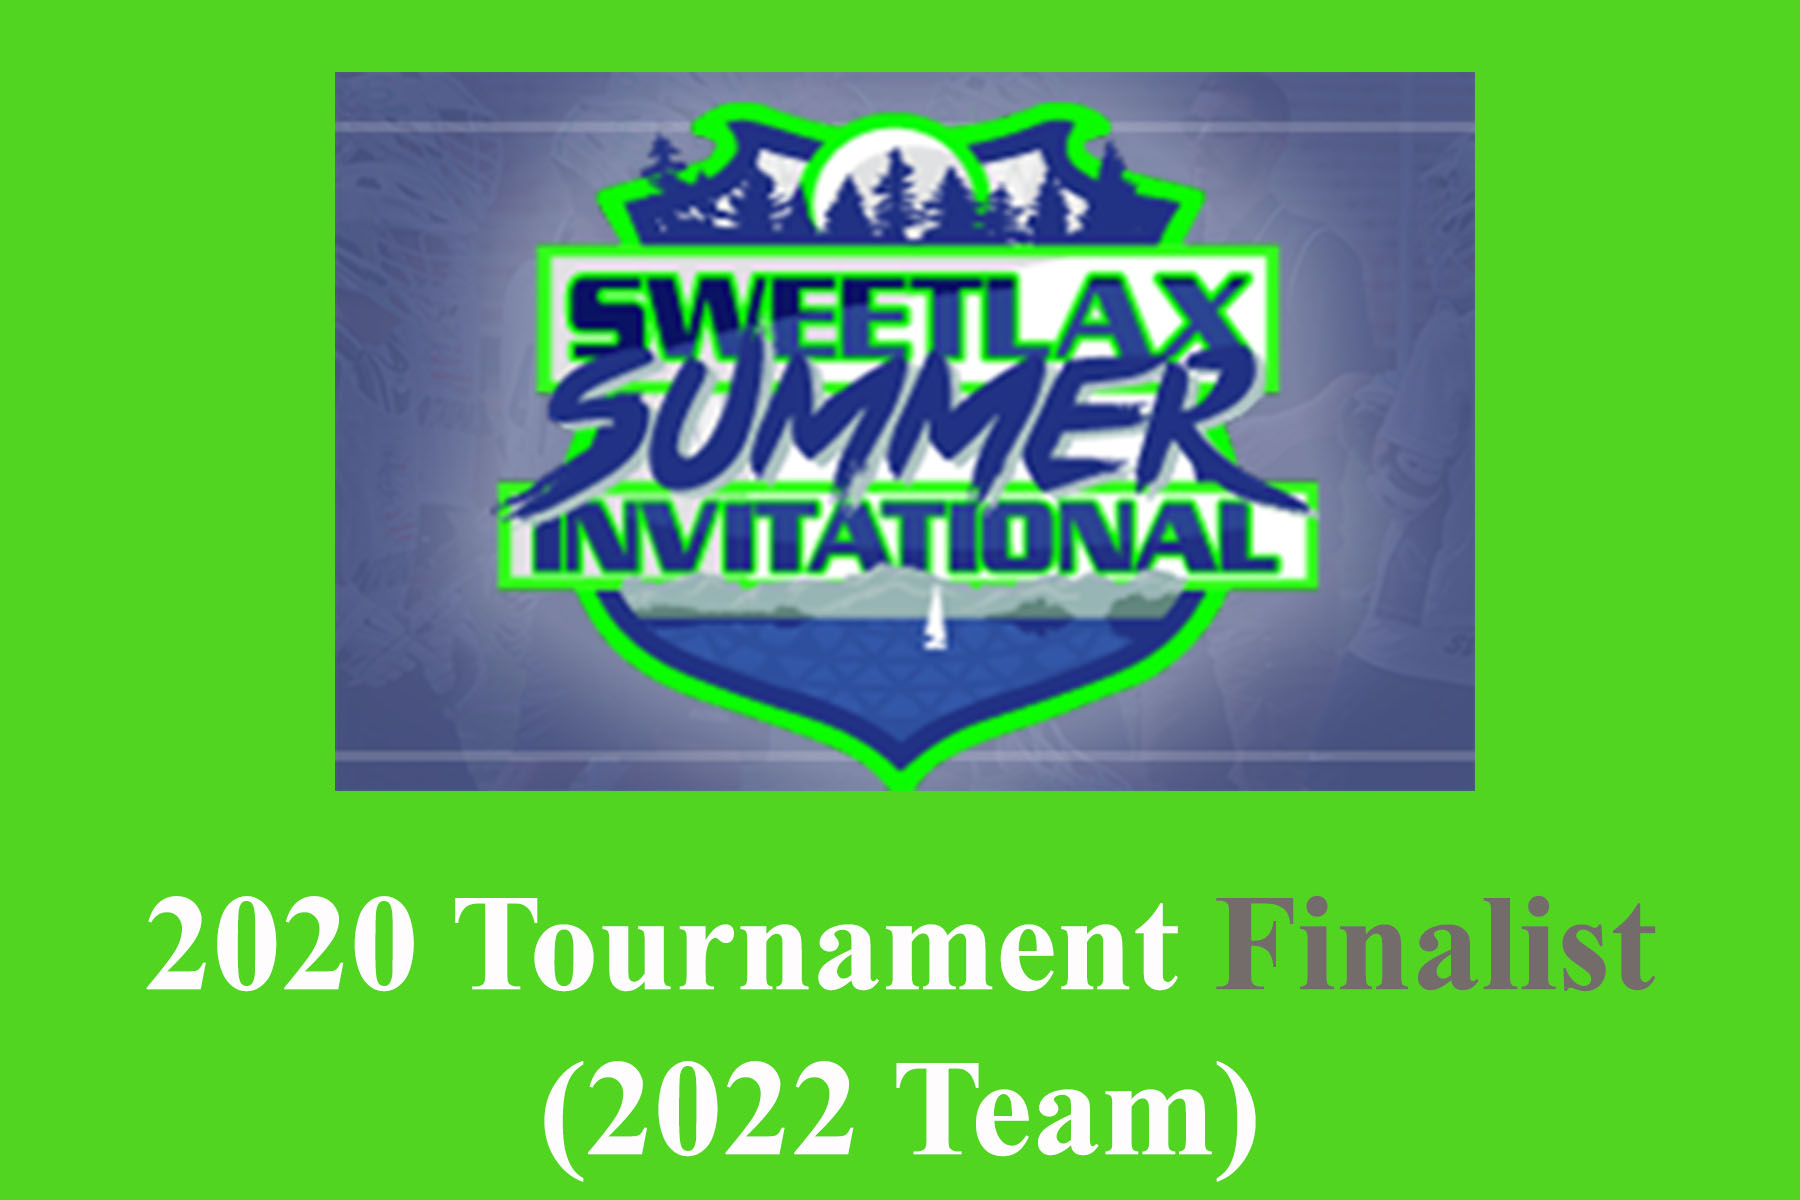 2020 Sweetlax finalist